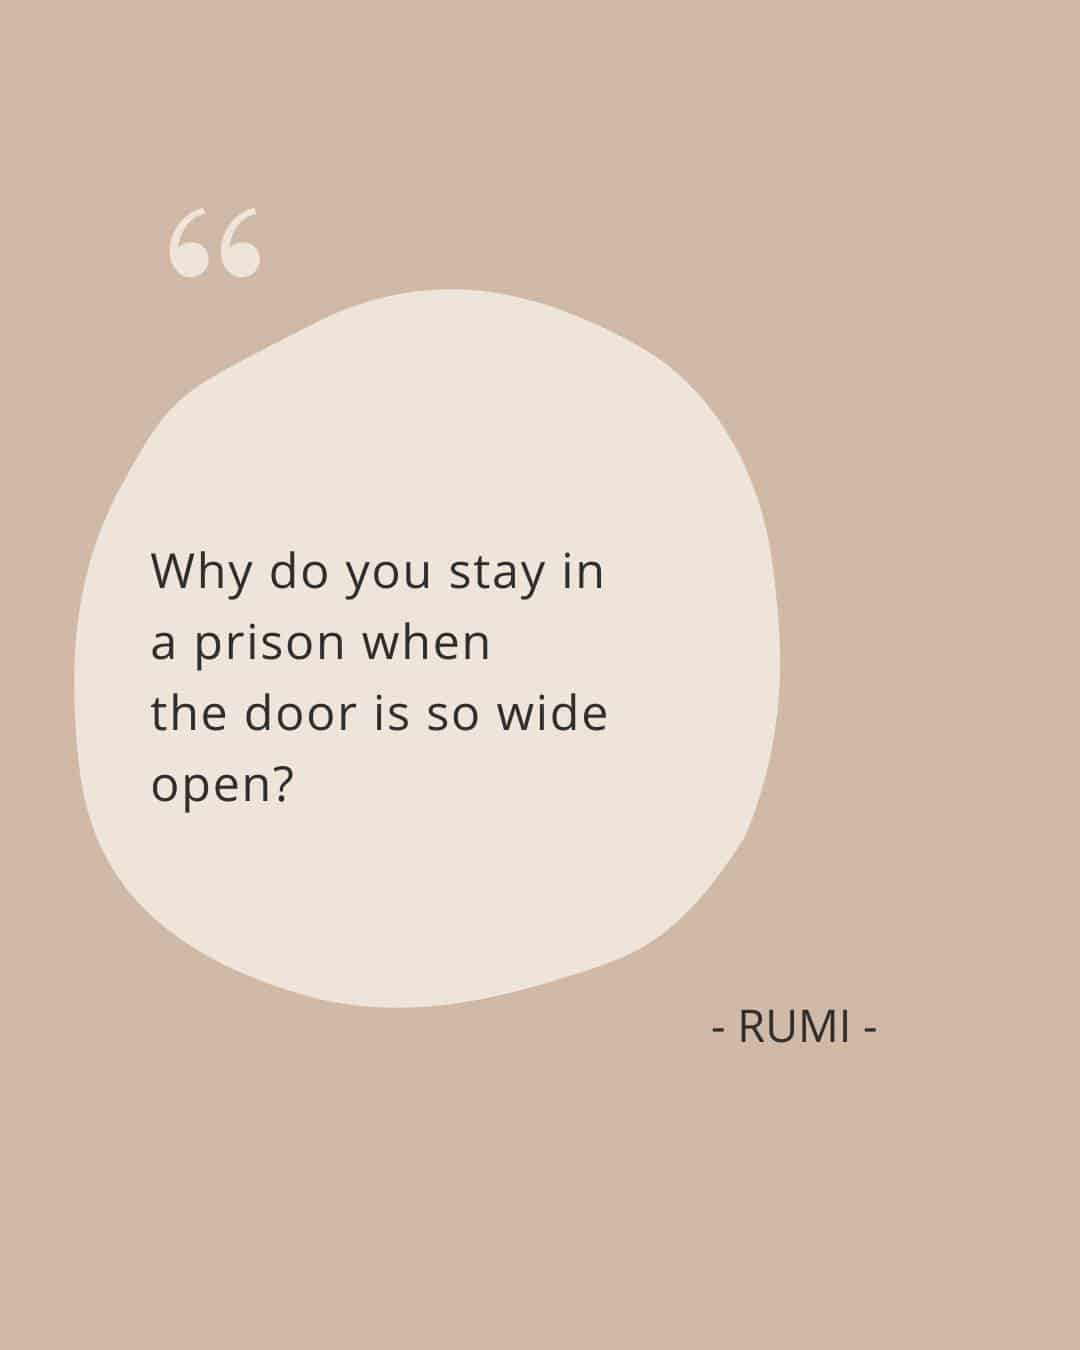 'Waarom blijf je in een gevangenis als de deur zo wijd open staat?' - Rumi

Dit is een van mijn favoriete citaten, die me herinnert aan dat ik nergens aan vastzit binnen mijn bedrijf waar ik een hekel aan heb.

Soms ben je zo druk met het ondersteunen van klanten, dat je vergeet dat jij de baas bent en jij bepaalt hoe je jouw bedrijf wilt leiden. Dat betekent dat NIETS een onderdeel hoeft te zijn van jouw bedrijfsmodel, routines of processen, tenzij jij dat wilt.

Hetzelfde geldt absoluut ook voor jouw content marketing.

Je zit niet vast aan het maken van een soort content waar je gek van wordt. In mijn geval... Reels

Je hoeft niet op een bepaalde manier te bloggen of sociale media te gebruiken zoals de guru's erop staan dat je doet! Jij bent jij!

Wanneer en als je merkt dat je een contentstrategie forceert die aanvoelt als wortelkanaalbehandeling, onthoud dan dat de deur wijd open staat.

Je kunt jouw koers op elk gewenst moment wijzigen. Bovendien zijn er ook geen verkeerde of juiste keuzes. Of je van verkeerde keuzes wilt leren, dat is aan jou...

Je kunt elke content strategie  laten werken en er resultaten mee behalen - dus waarom zou je er niet een maken die 100% bij jou past?

Stuur 'content coaching' in de DM als je meer informatie wilt ontvangen hoe jij met content aan de slag kunt op een manier die bij jou past.

#eigenbedrijf #onlineondernemen #ondernemers #zakenvrouw #ondernemendevrouwen #vrouwelijkeondernemers #communicatie #kleineonderneming #powervrouwen #bedrijf #eigenbaas #groei #persoonlijkeontwikkeling #tipsvoorondernemers #contentcreatie #vrouwelijkeondernemer #startendeondernemer #onlinezichtbaarheid #ondernemerstips #powervrouw #ondernemer #ondernemen #zzper